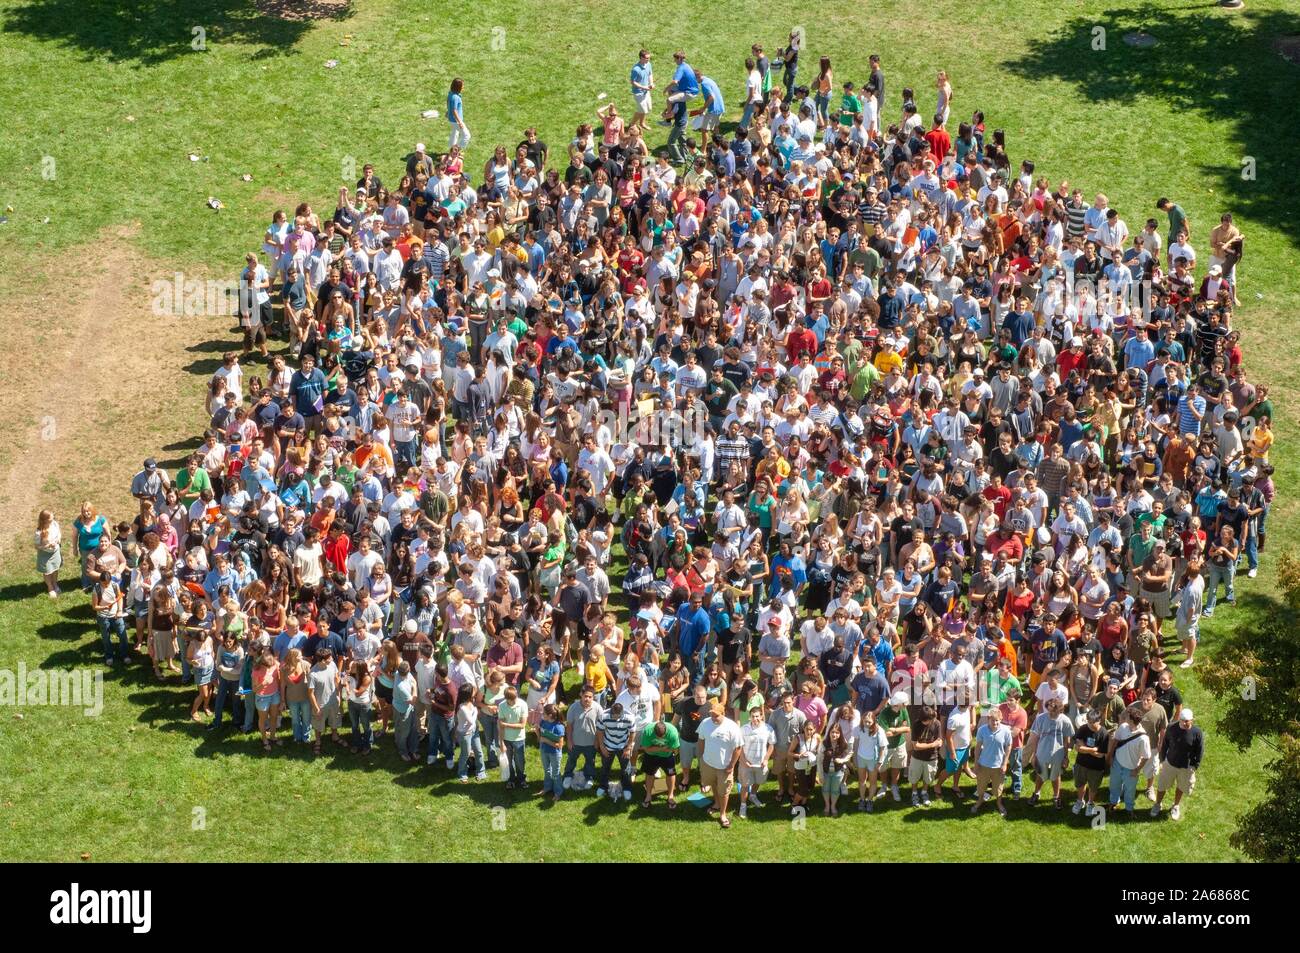 Vue d'ensemble, d'une foule d'étudiants de première année, debout dans un groupe serré dans l'herbe sur une journée ensoleillée durant une semaine d'orientation, de l'événement à l'Université Johns Hopkins University, Baltimore, Maryland, le 4 septembre 2006. À partir de la collection photographique de Homewood. () Banque D'Images